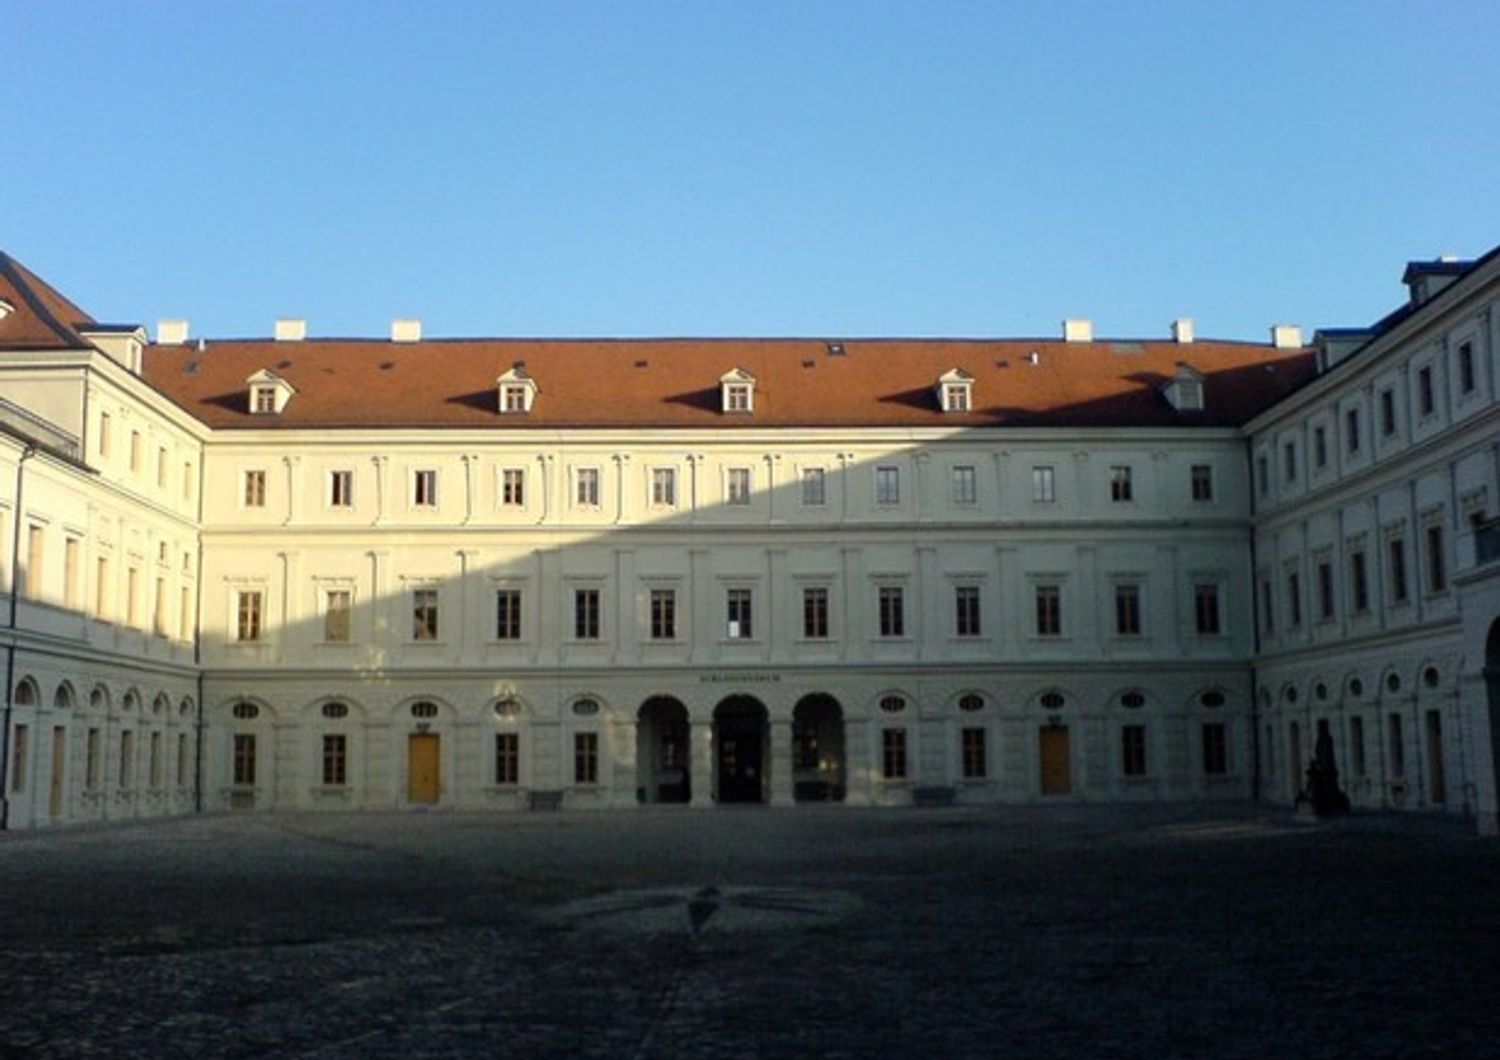 &nbsp;La facciata del castello di Weimar, ricostruita a fine '700 sul progetto originario di Costantino De' Servi&nbsp;